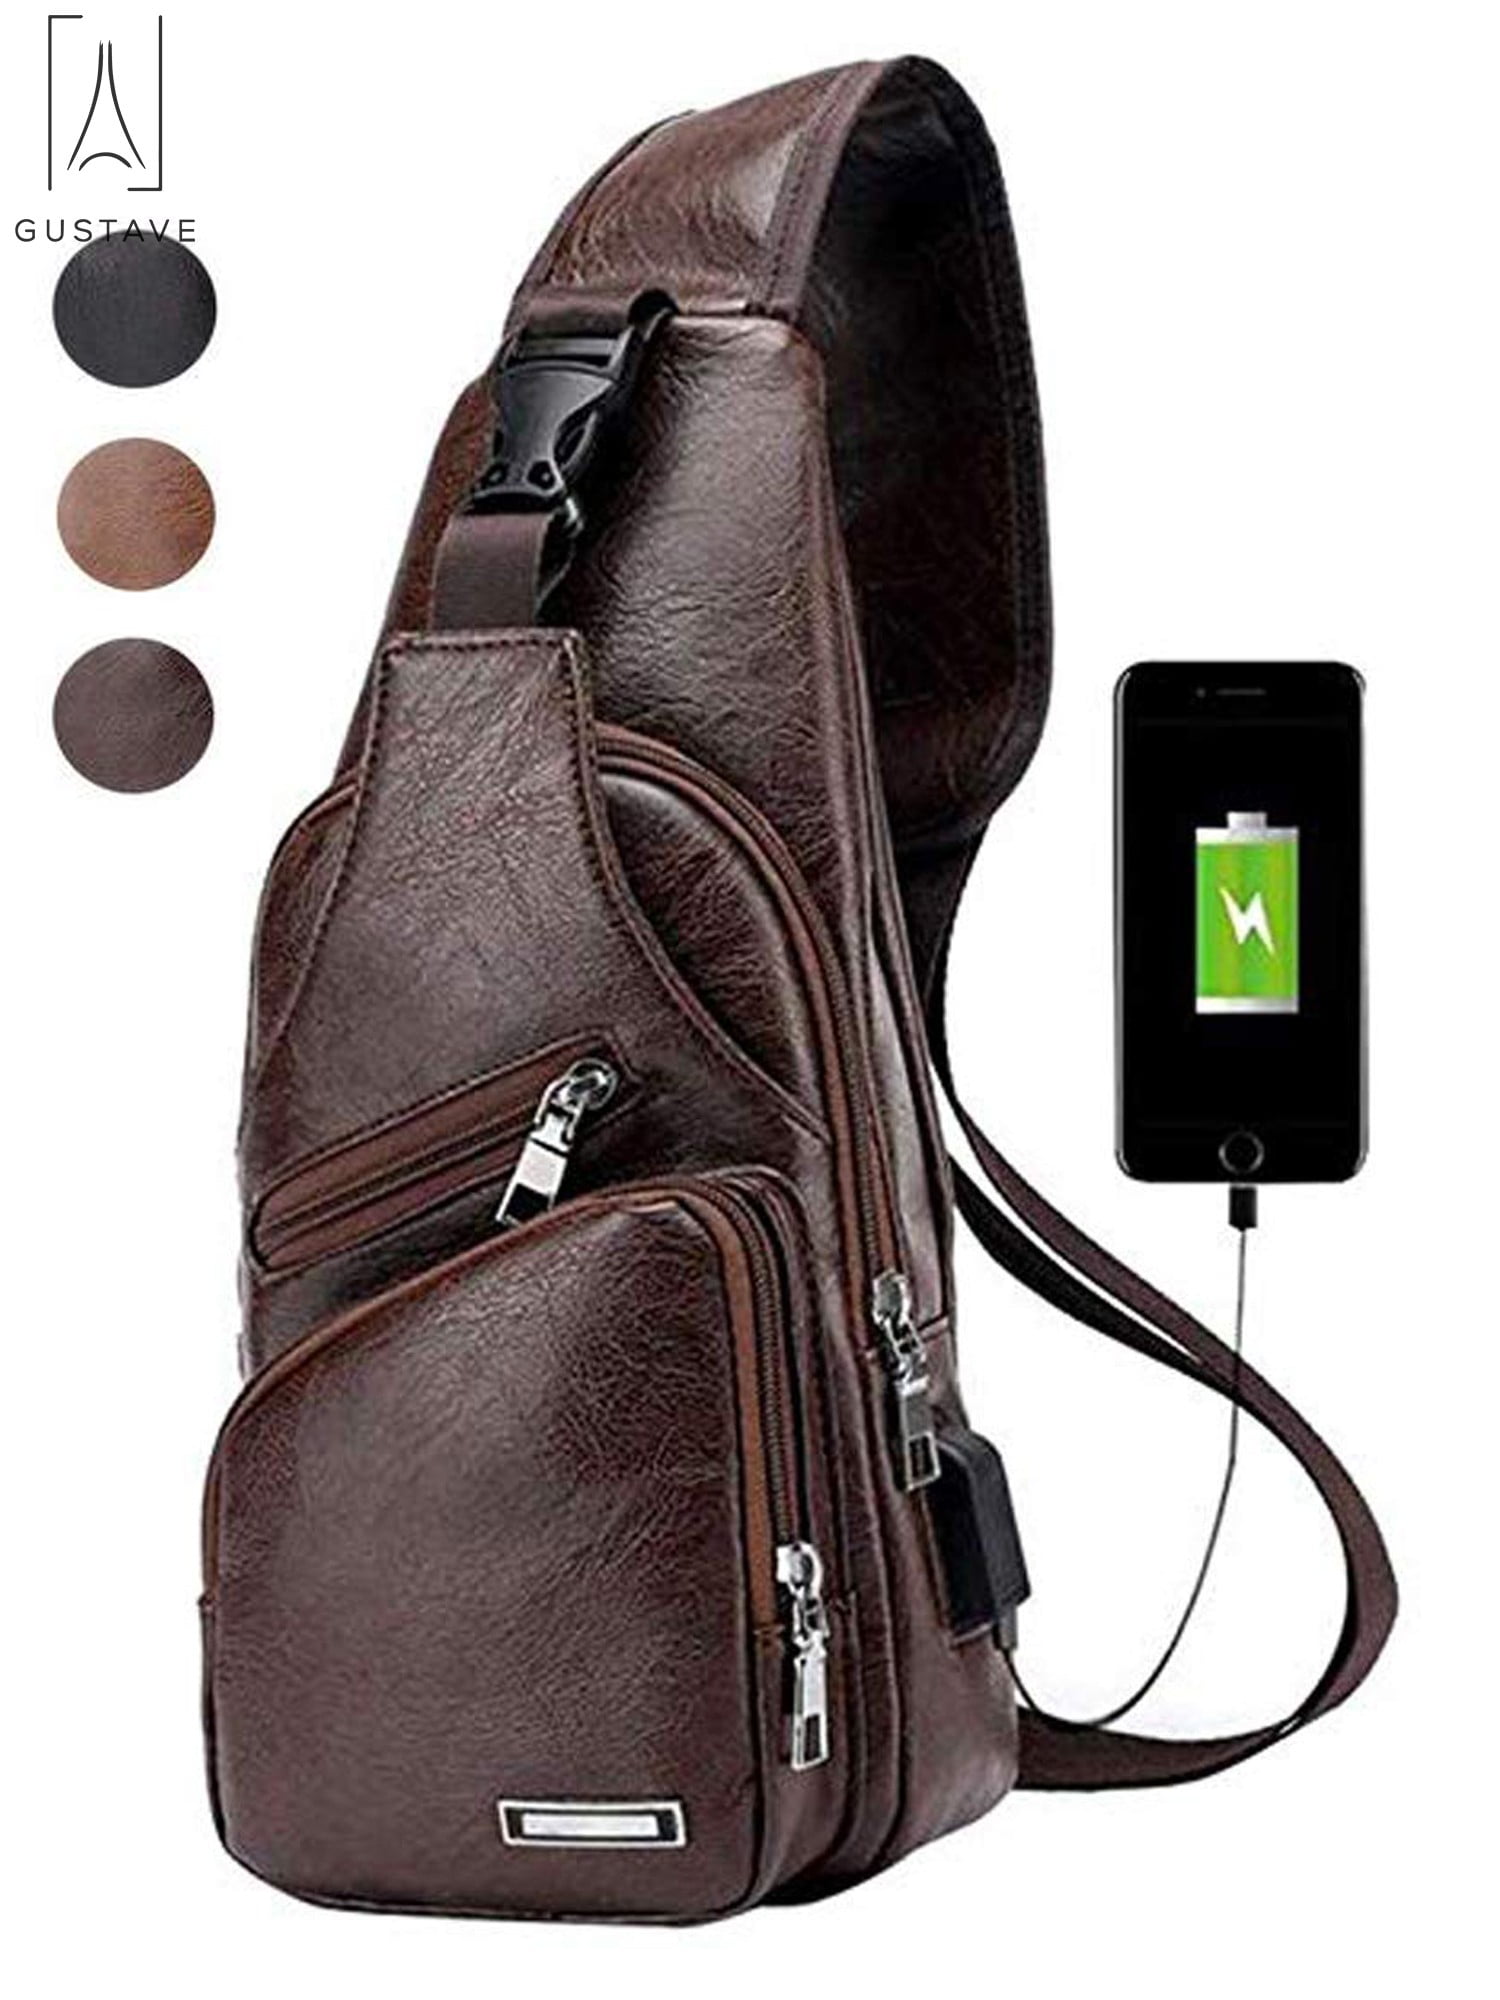 Man's Leather PU Fashion Vintage Leisure Travel Backpack Shoulder Bag Black